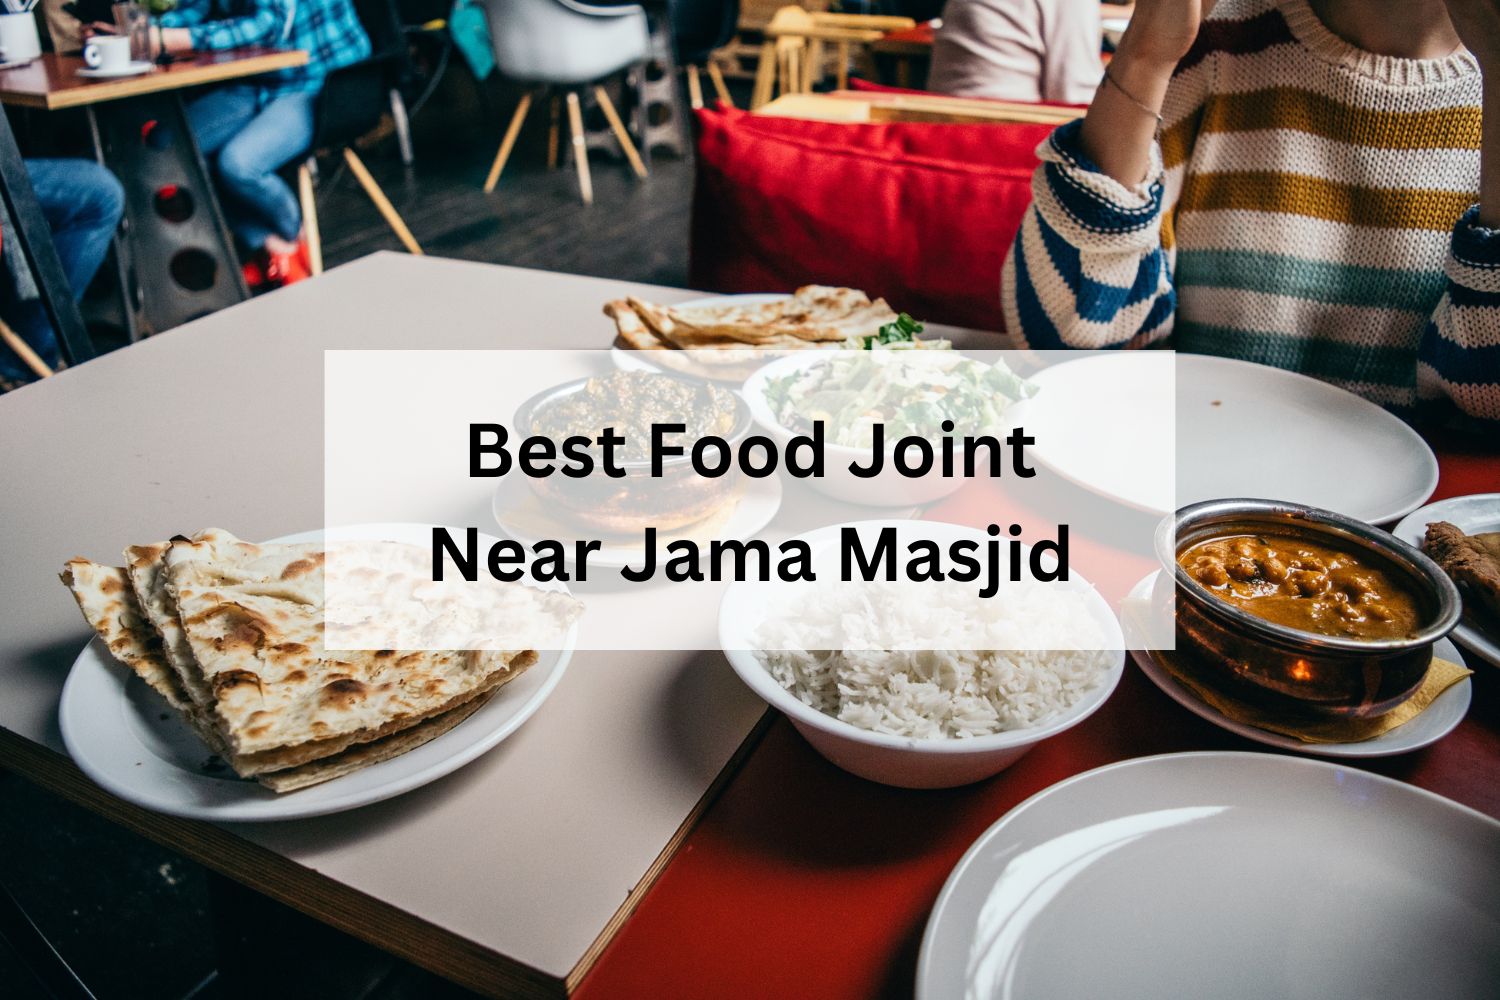 Best Food Joint Near Jama Masjid